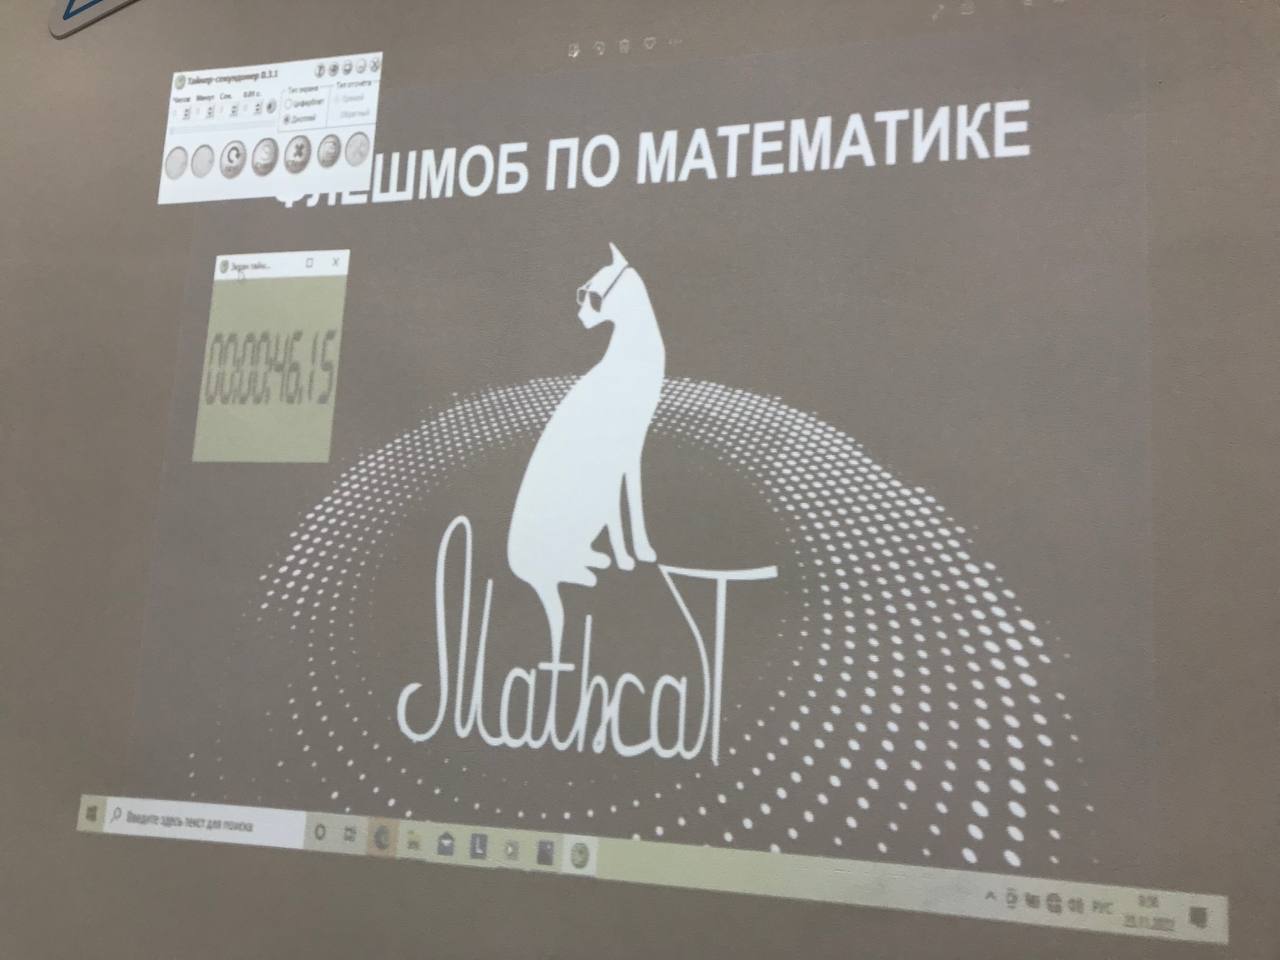 Математический флешмоб MathCat.